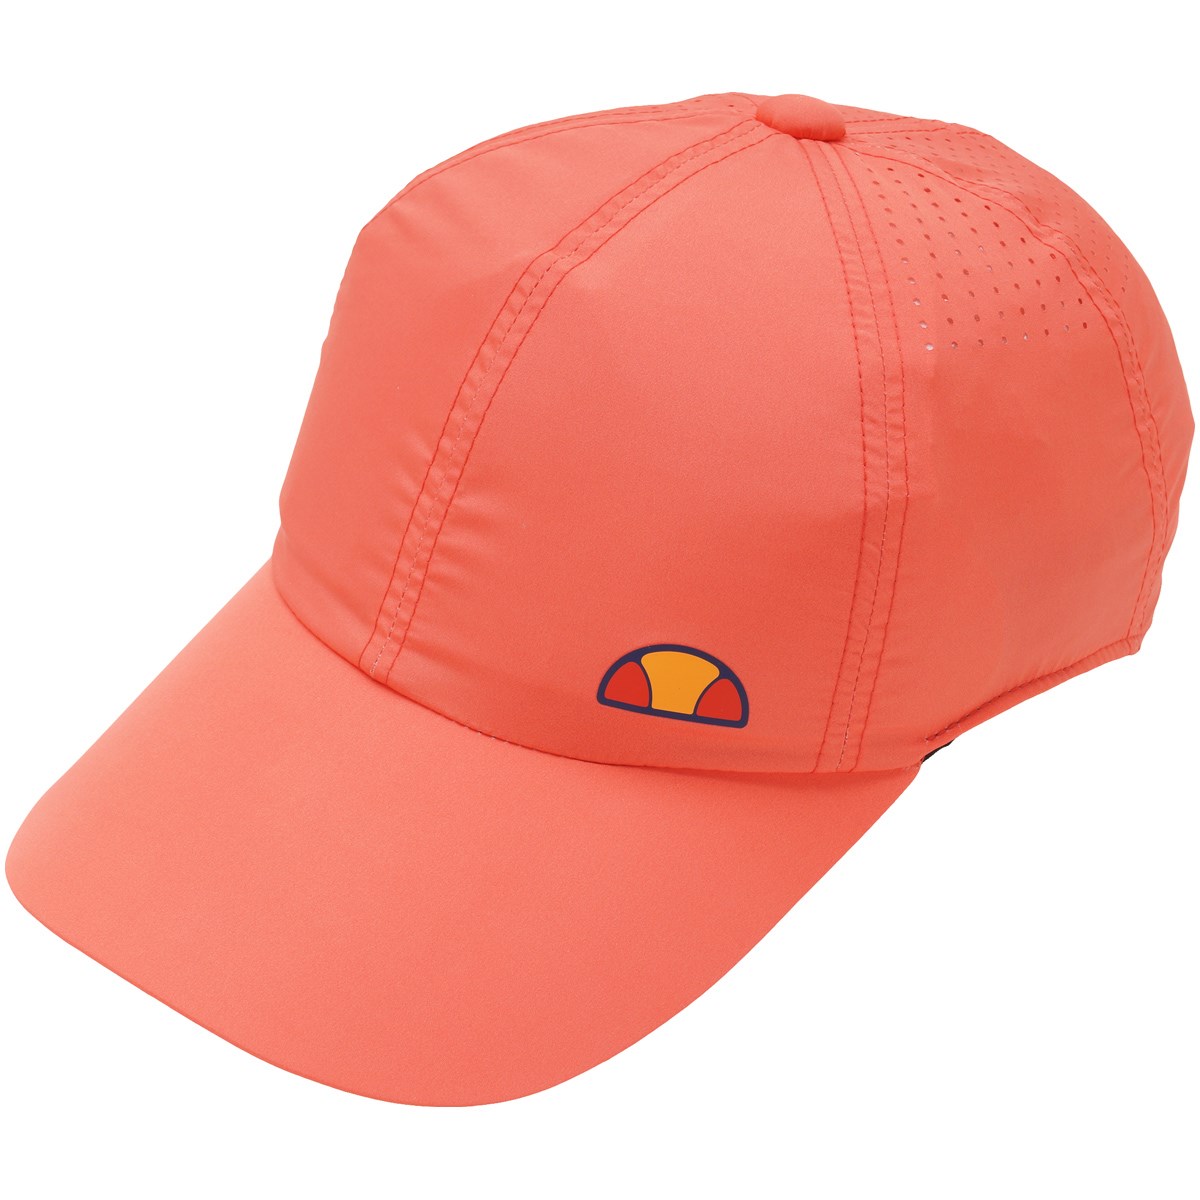  [アウトレット] [在庫限りのお買い得商品] エレッセ ストレッチフィットキャップ ゴルフウェア 帽子